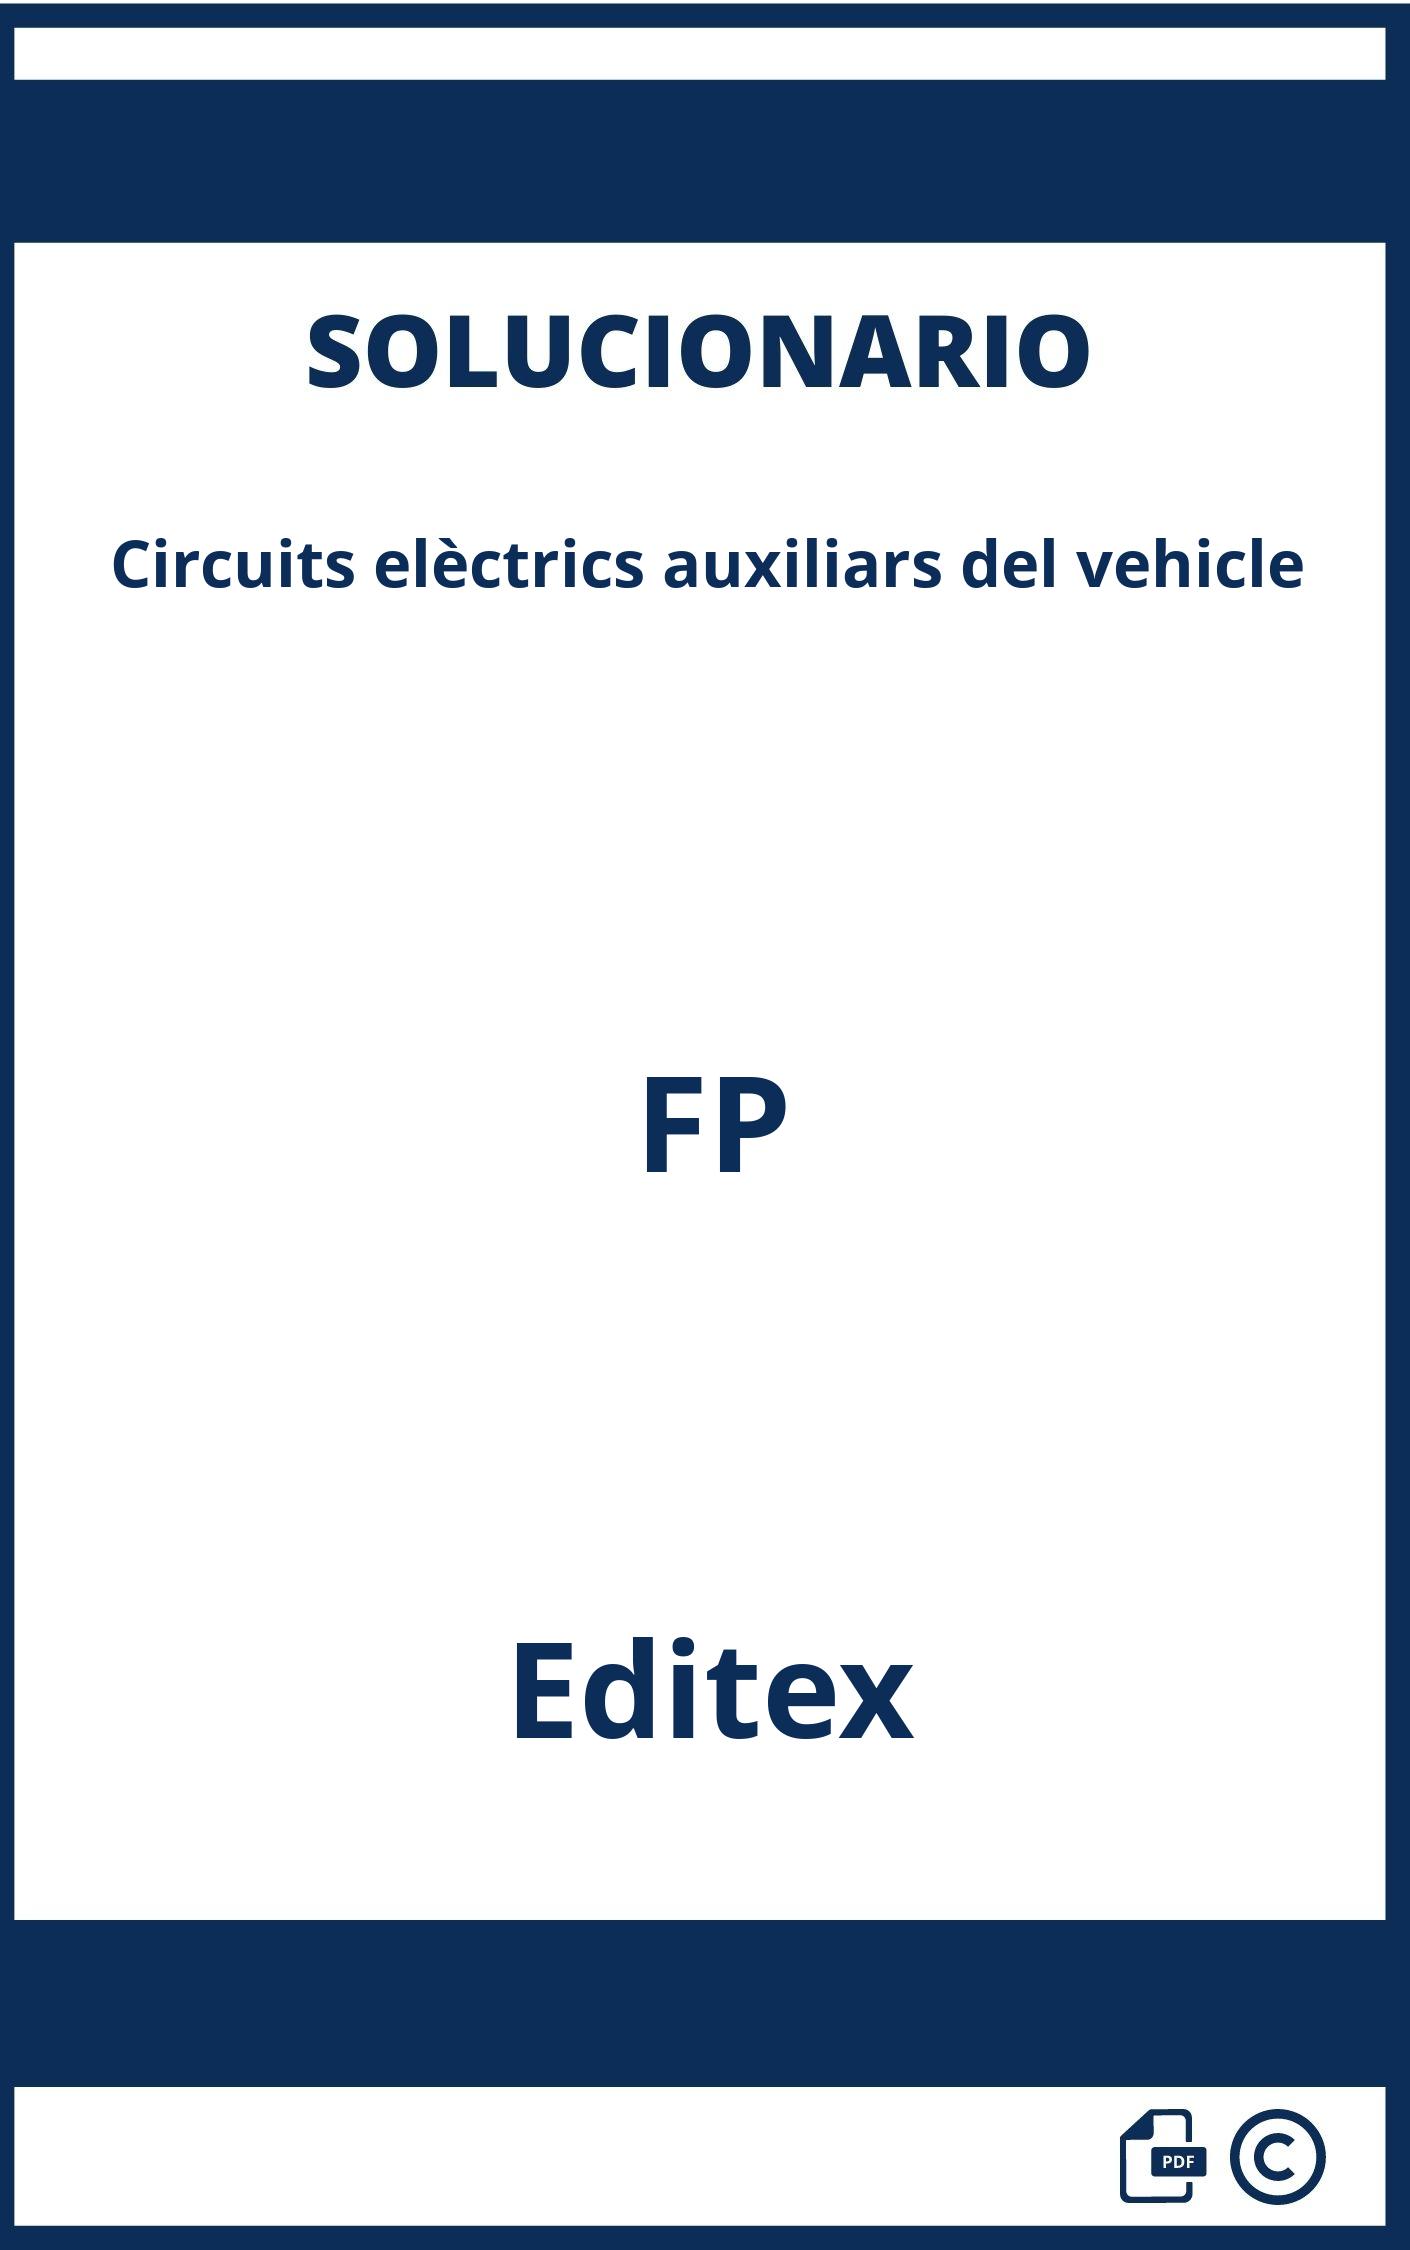 Solucionario Circuits elèctrics auxiliars del vehicle FP Editex